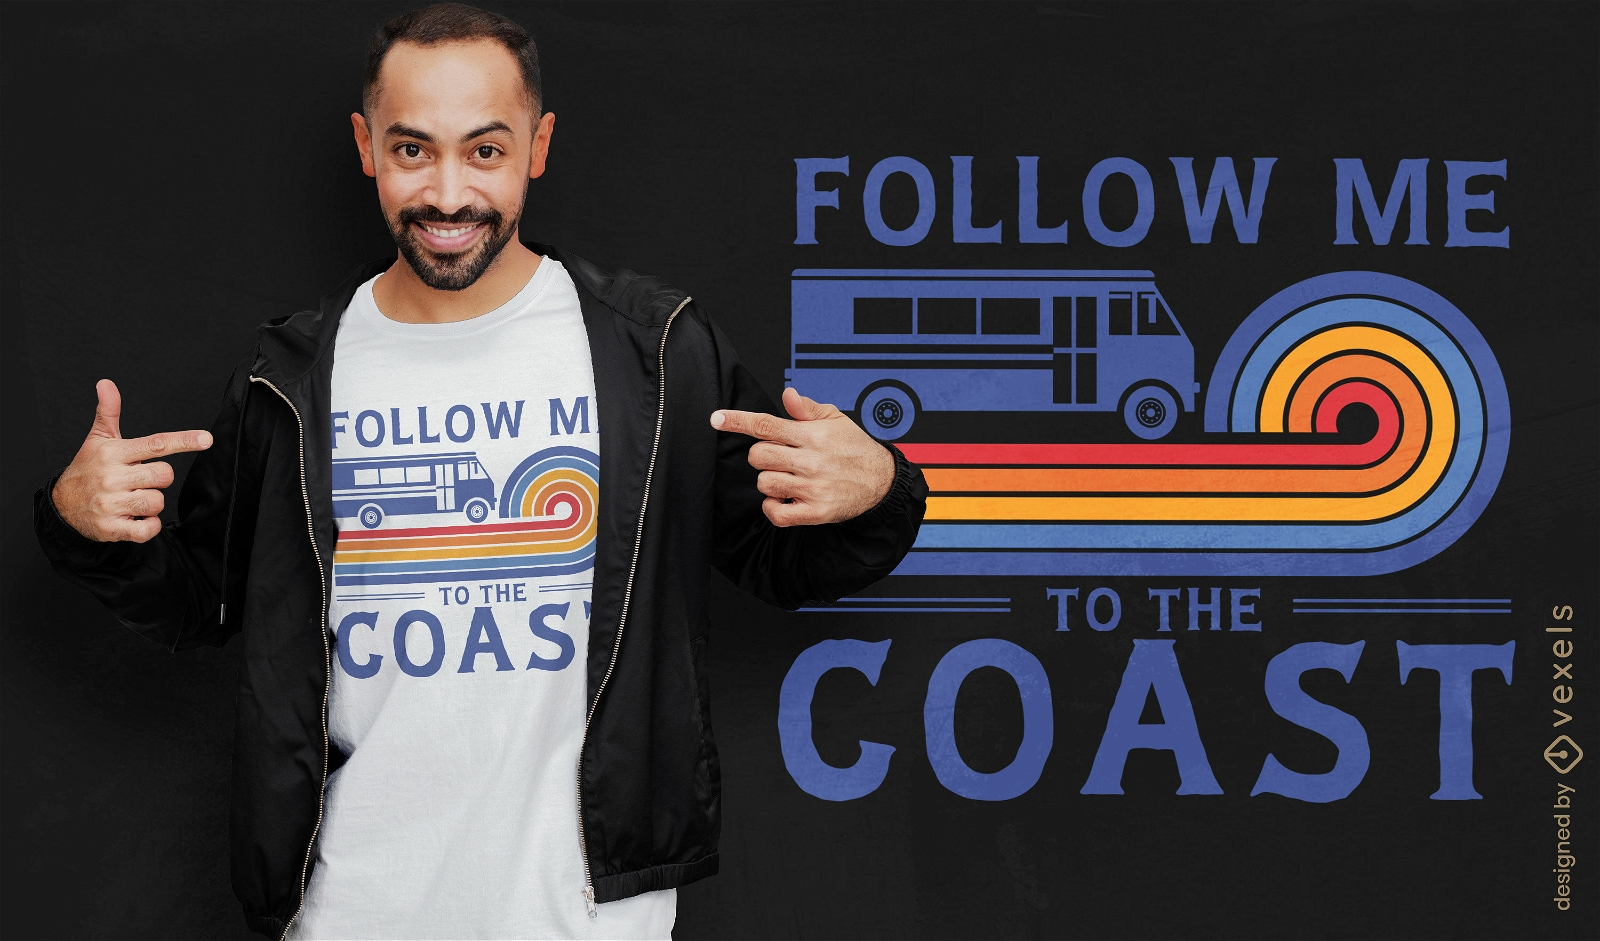 Follow me to the coast t-shirt design